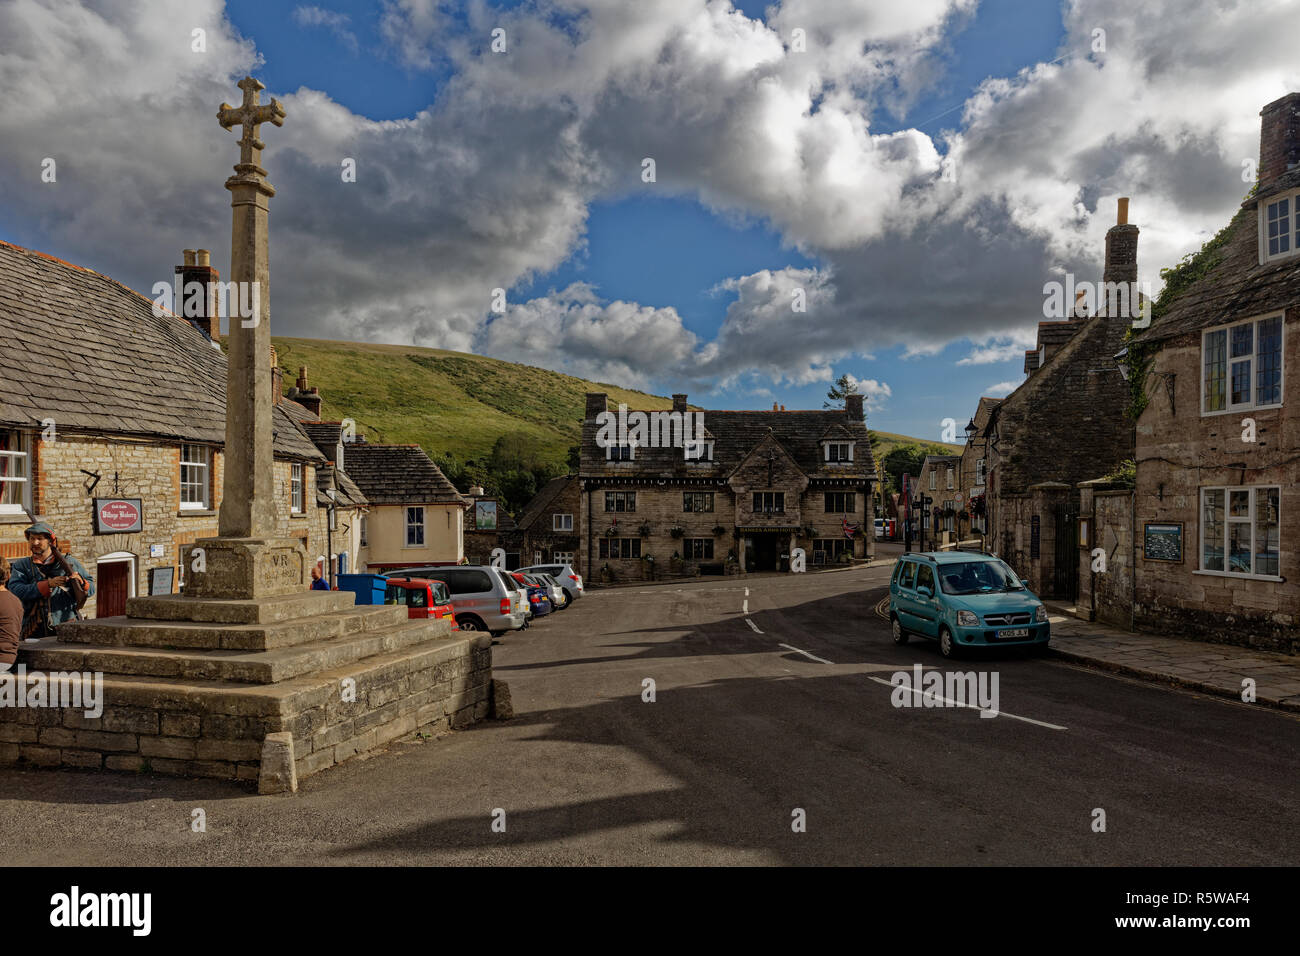 The village square at Corfe Castle, Dorset Stock Photo